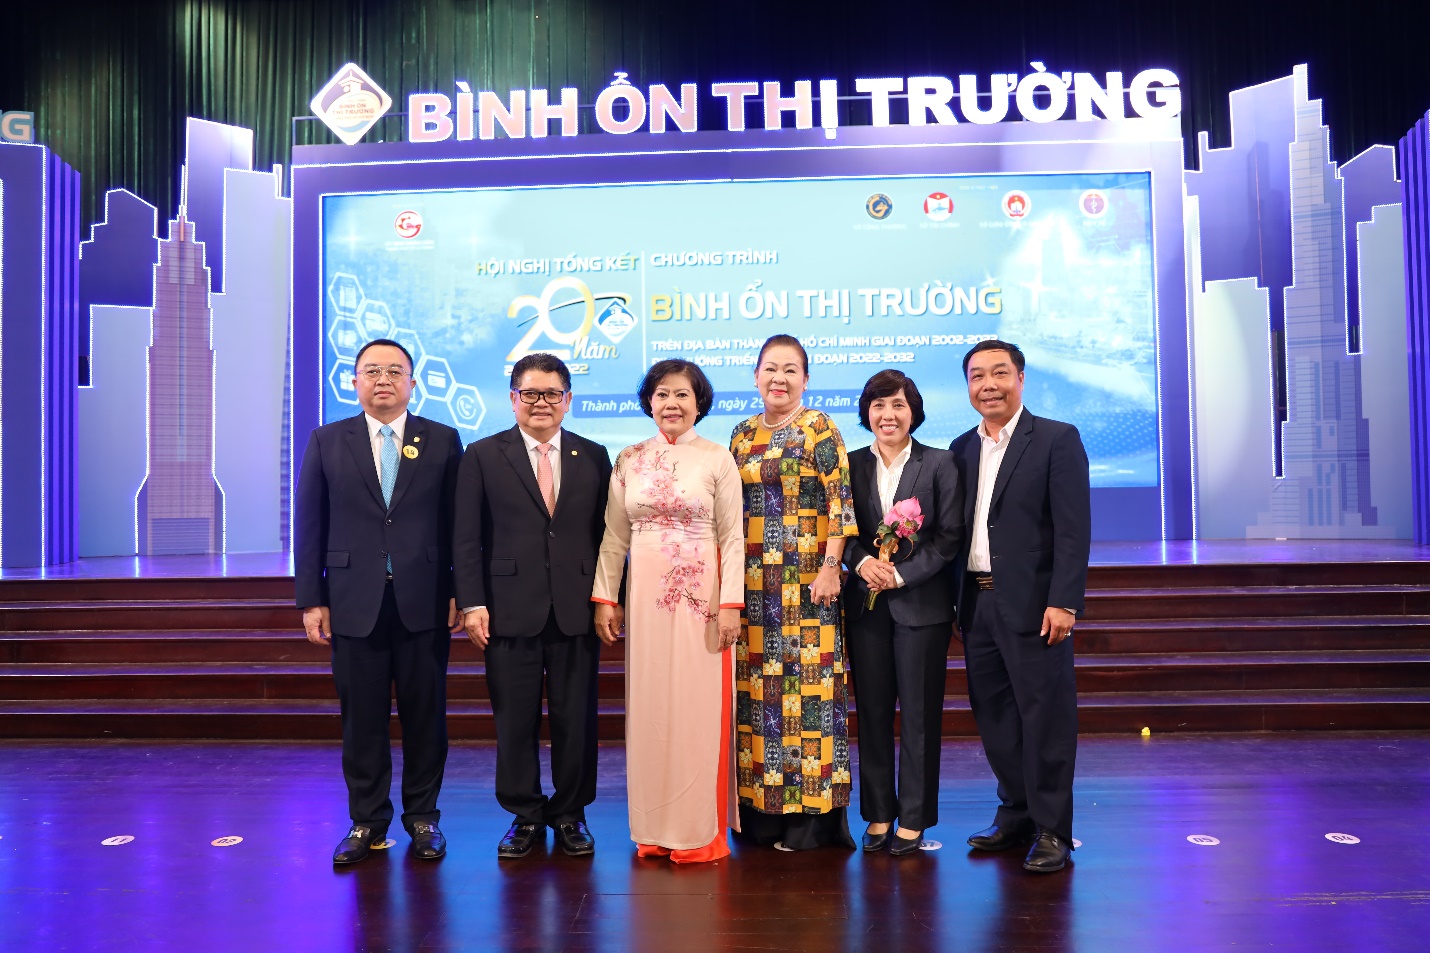 C.P. Việt Nam được vinh danh tại Hội nghị Tổng kết 20 năm thực hiện Chương trình Bình ổn thị trường   - Ảnh 5.